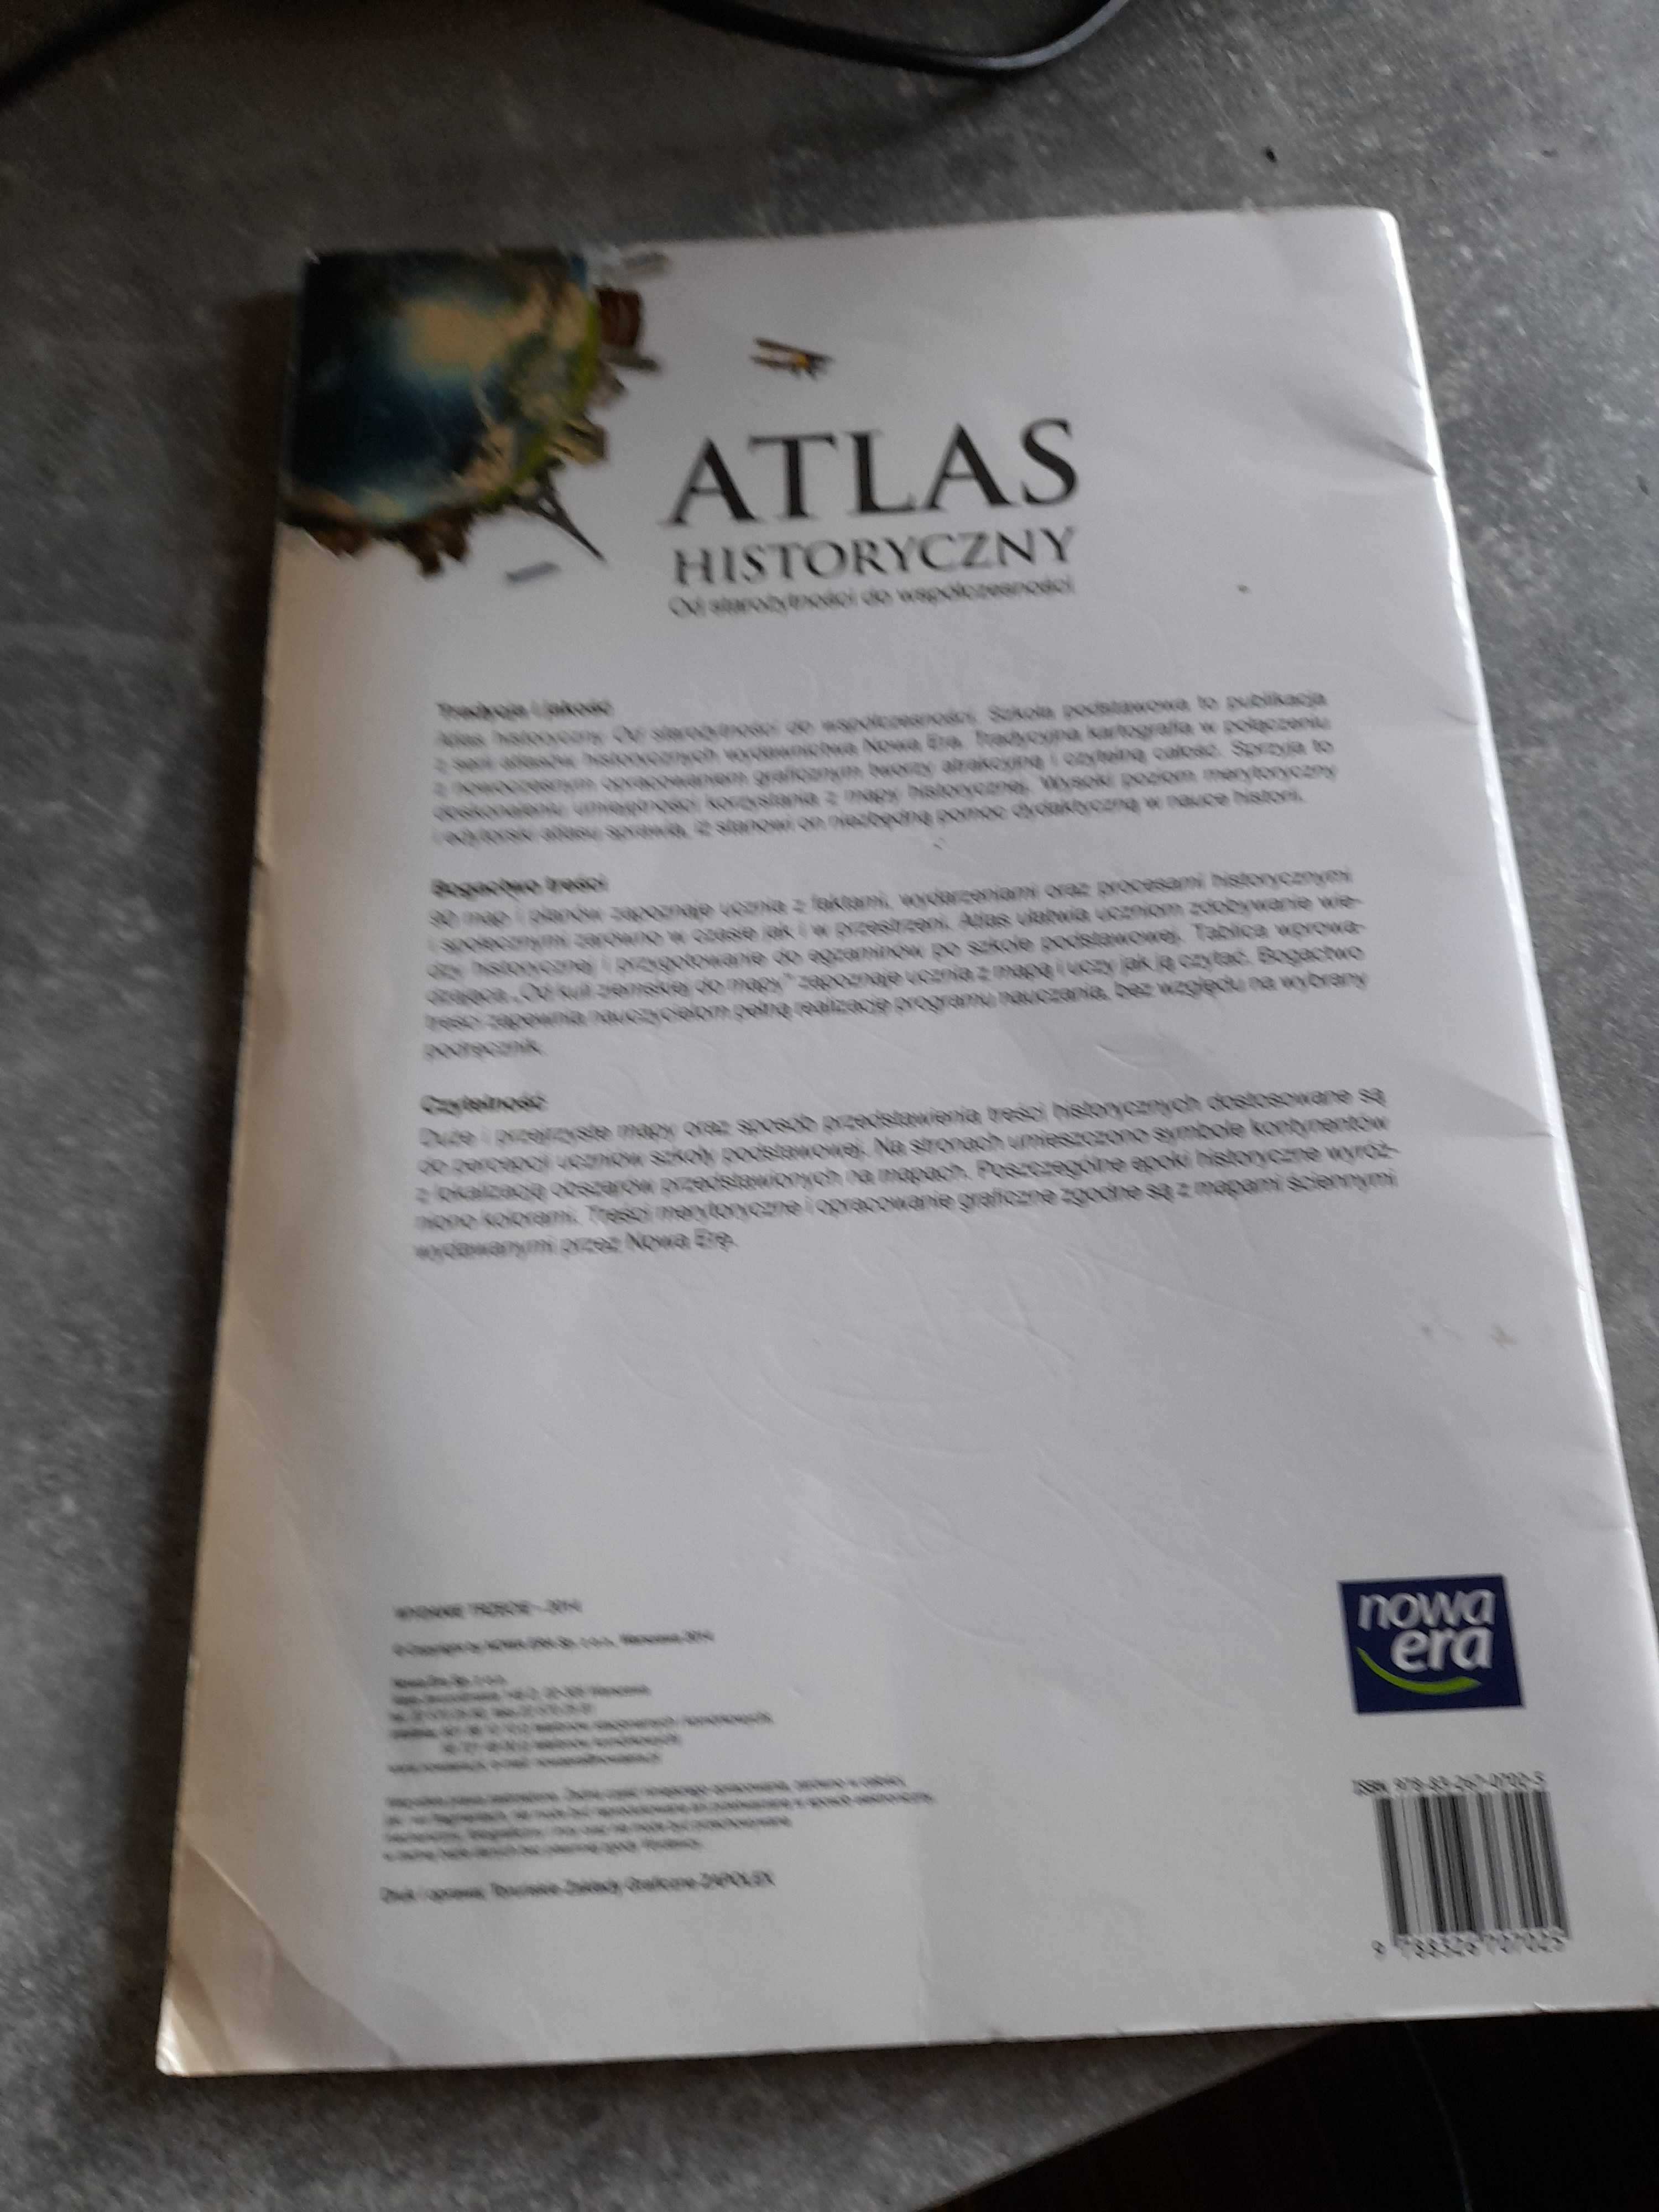 Atlas historyczny - od starożytności do współczesności. Nowa era